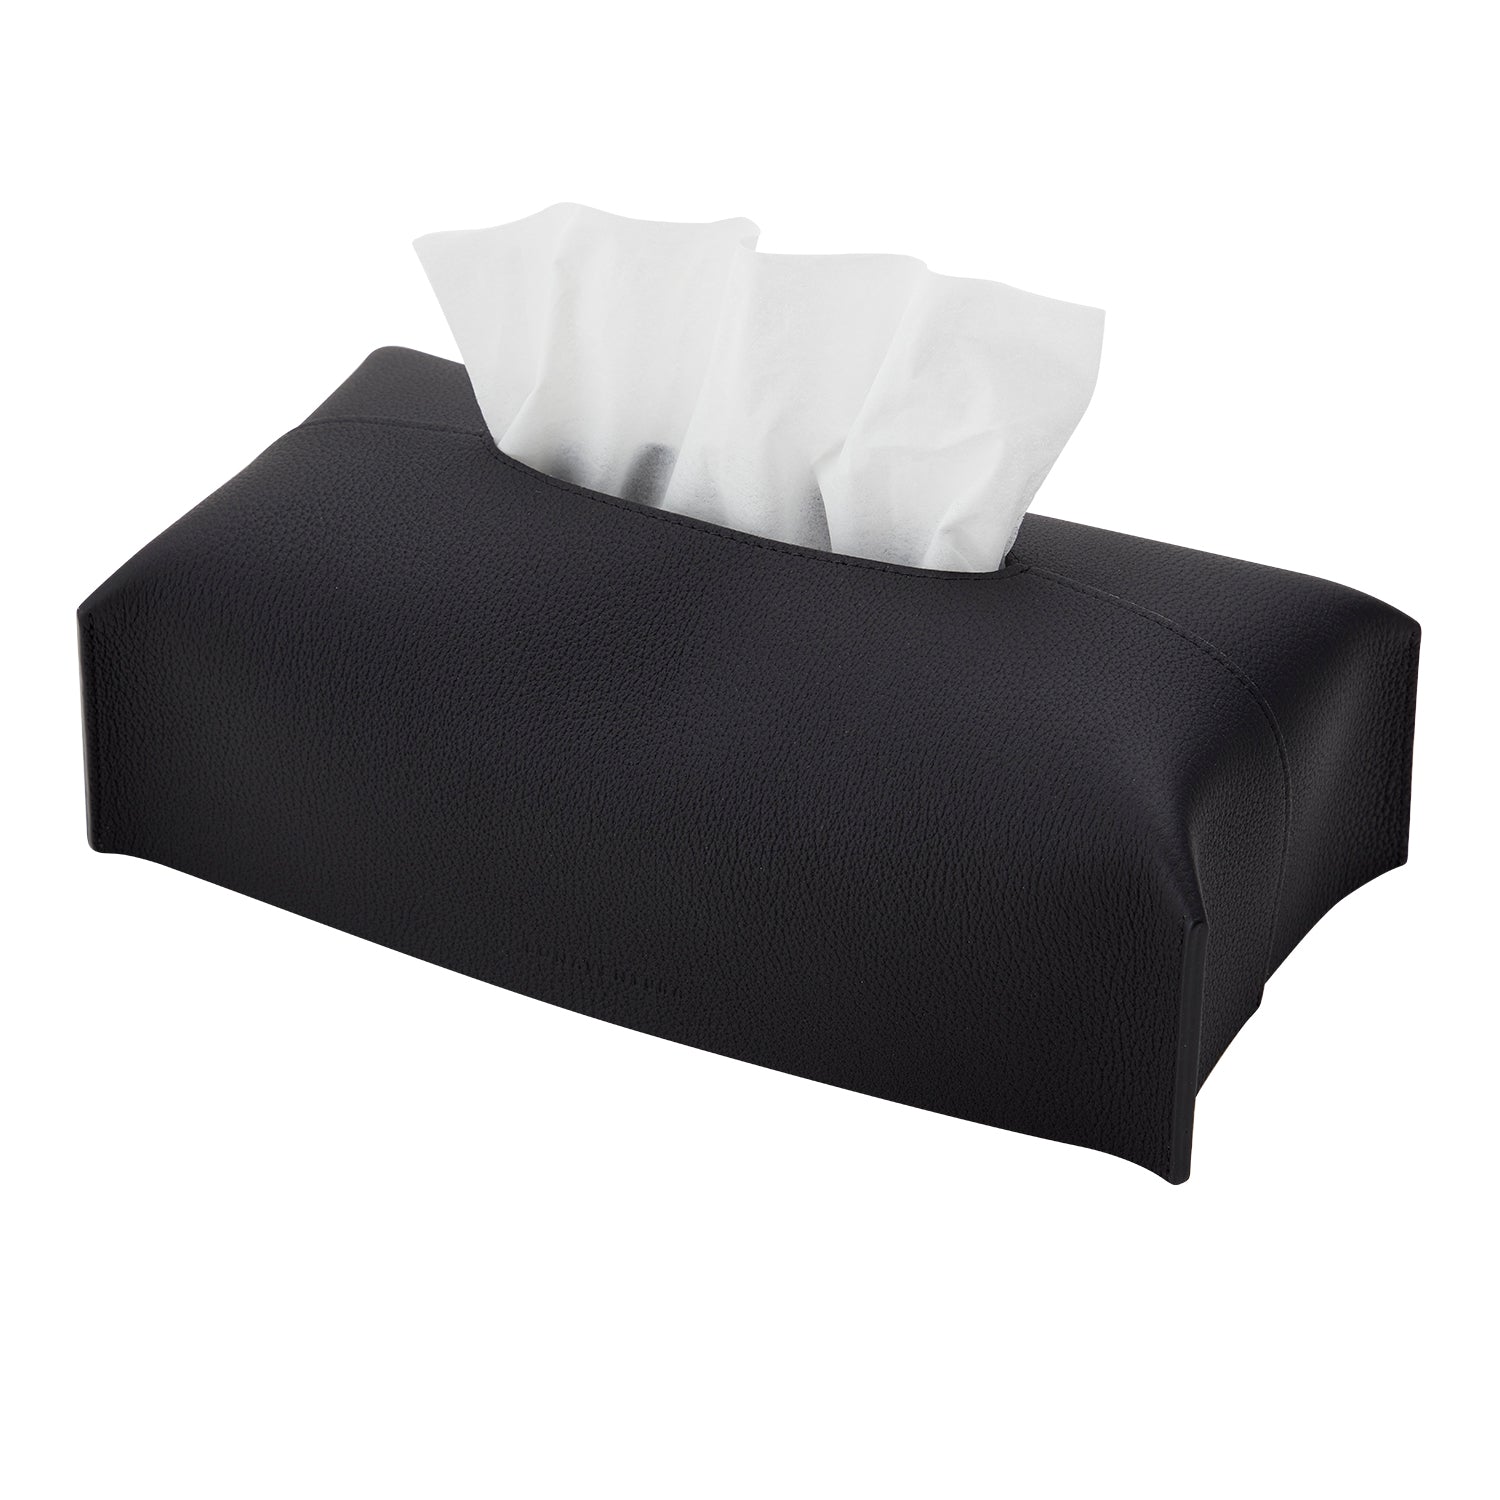 Tissue box cover (regular shrink)